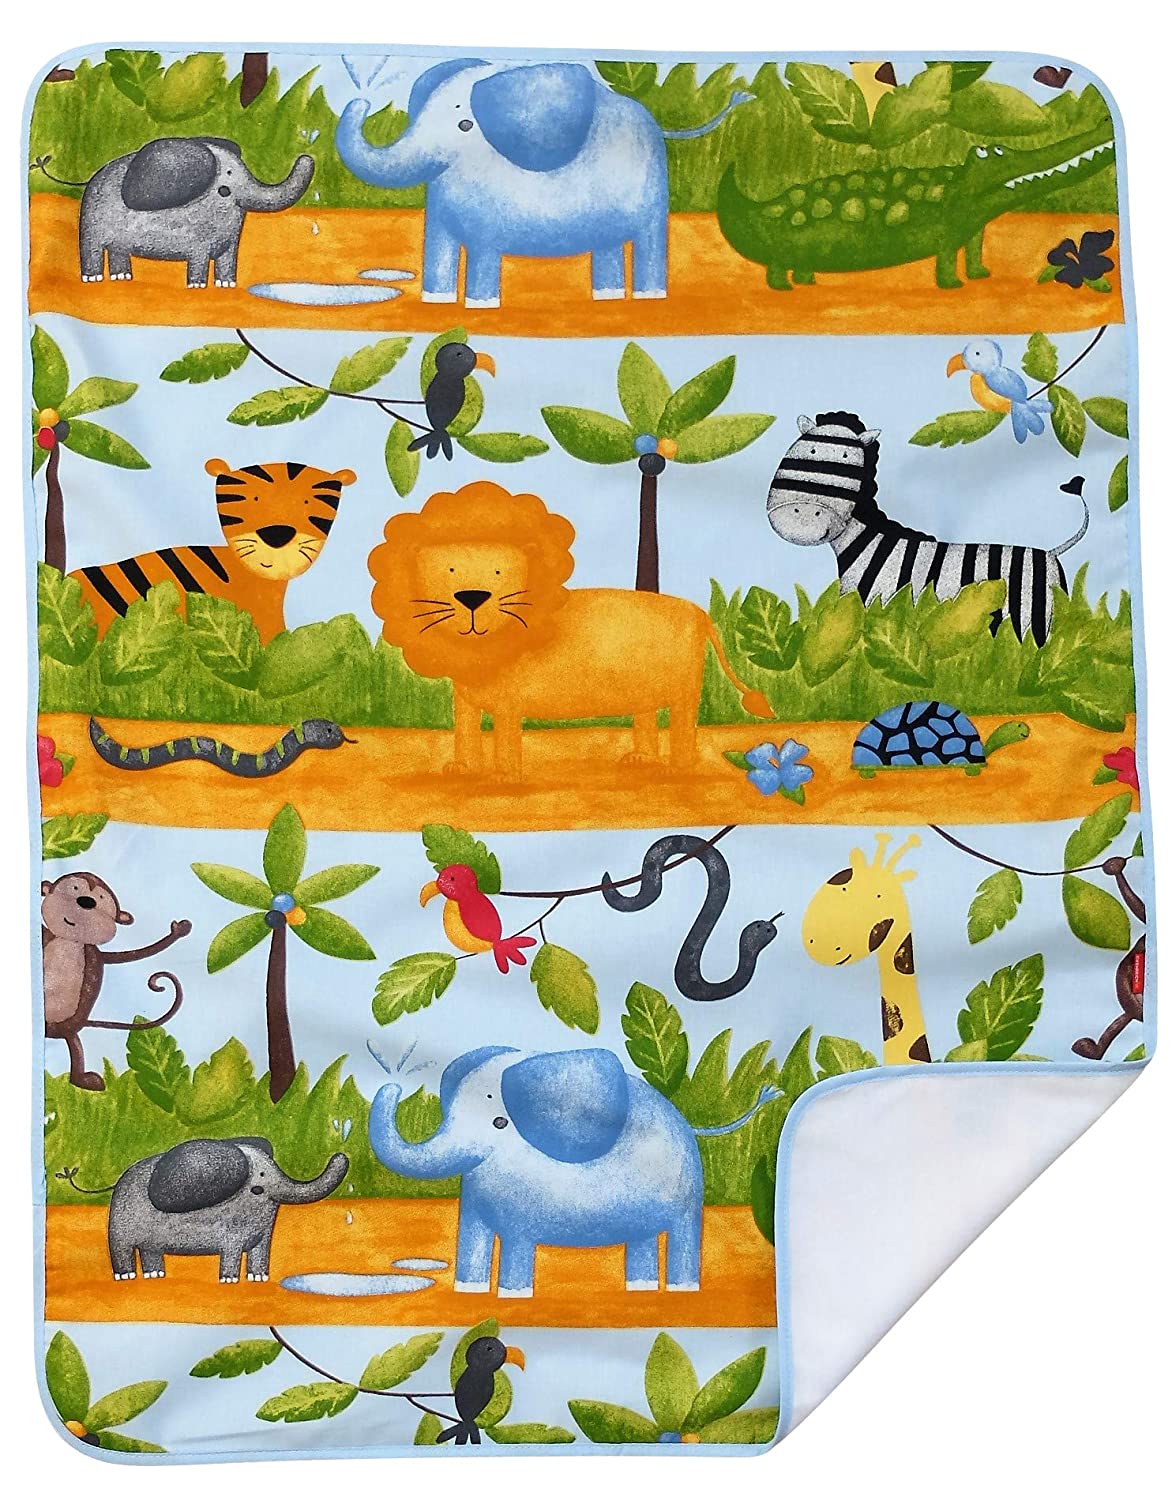 Ideenreich 2564 IDEENREICH 2564 Baby Blanket Jungle Animals 70 x 90 cm Multi-Coloured